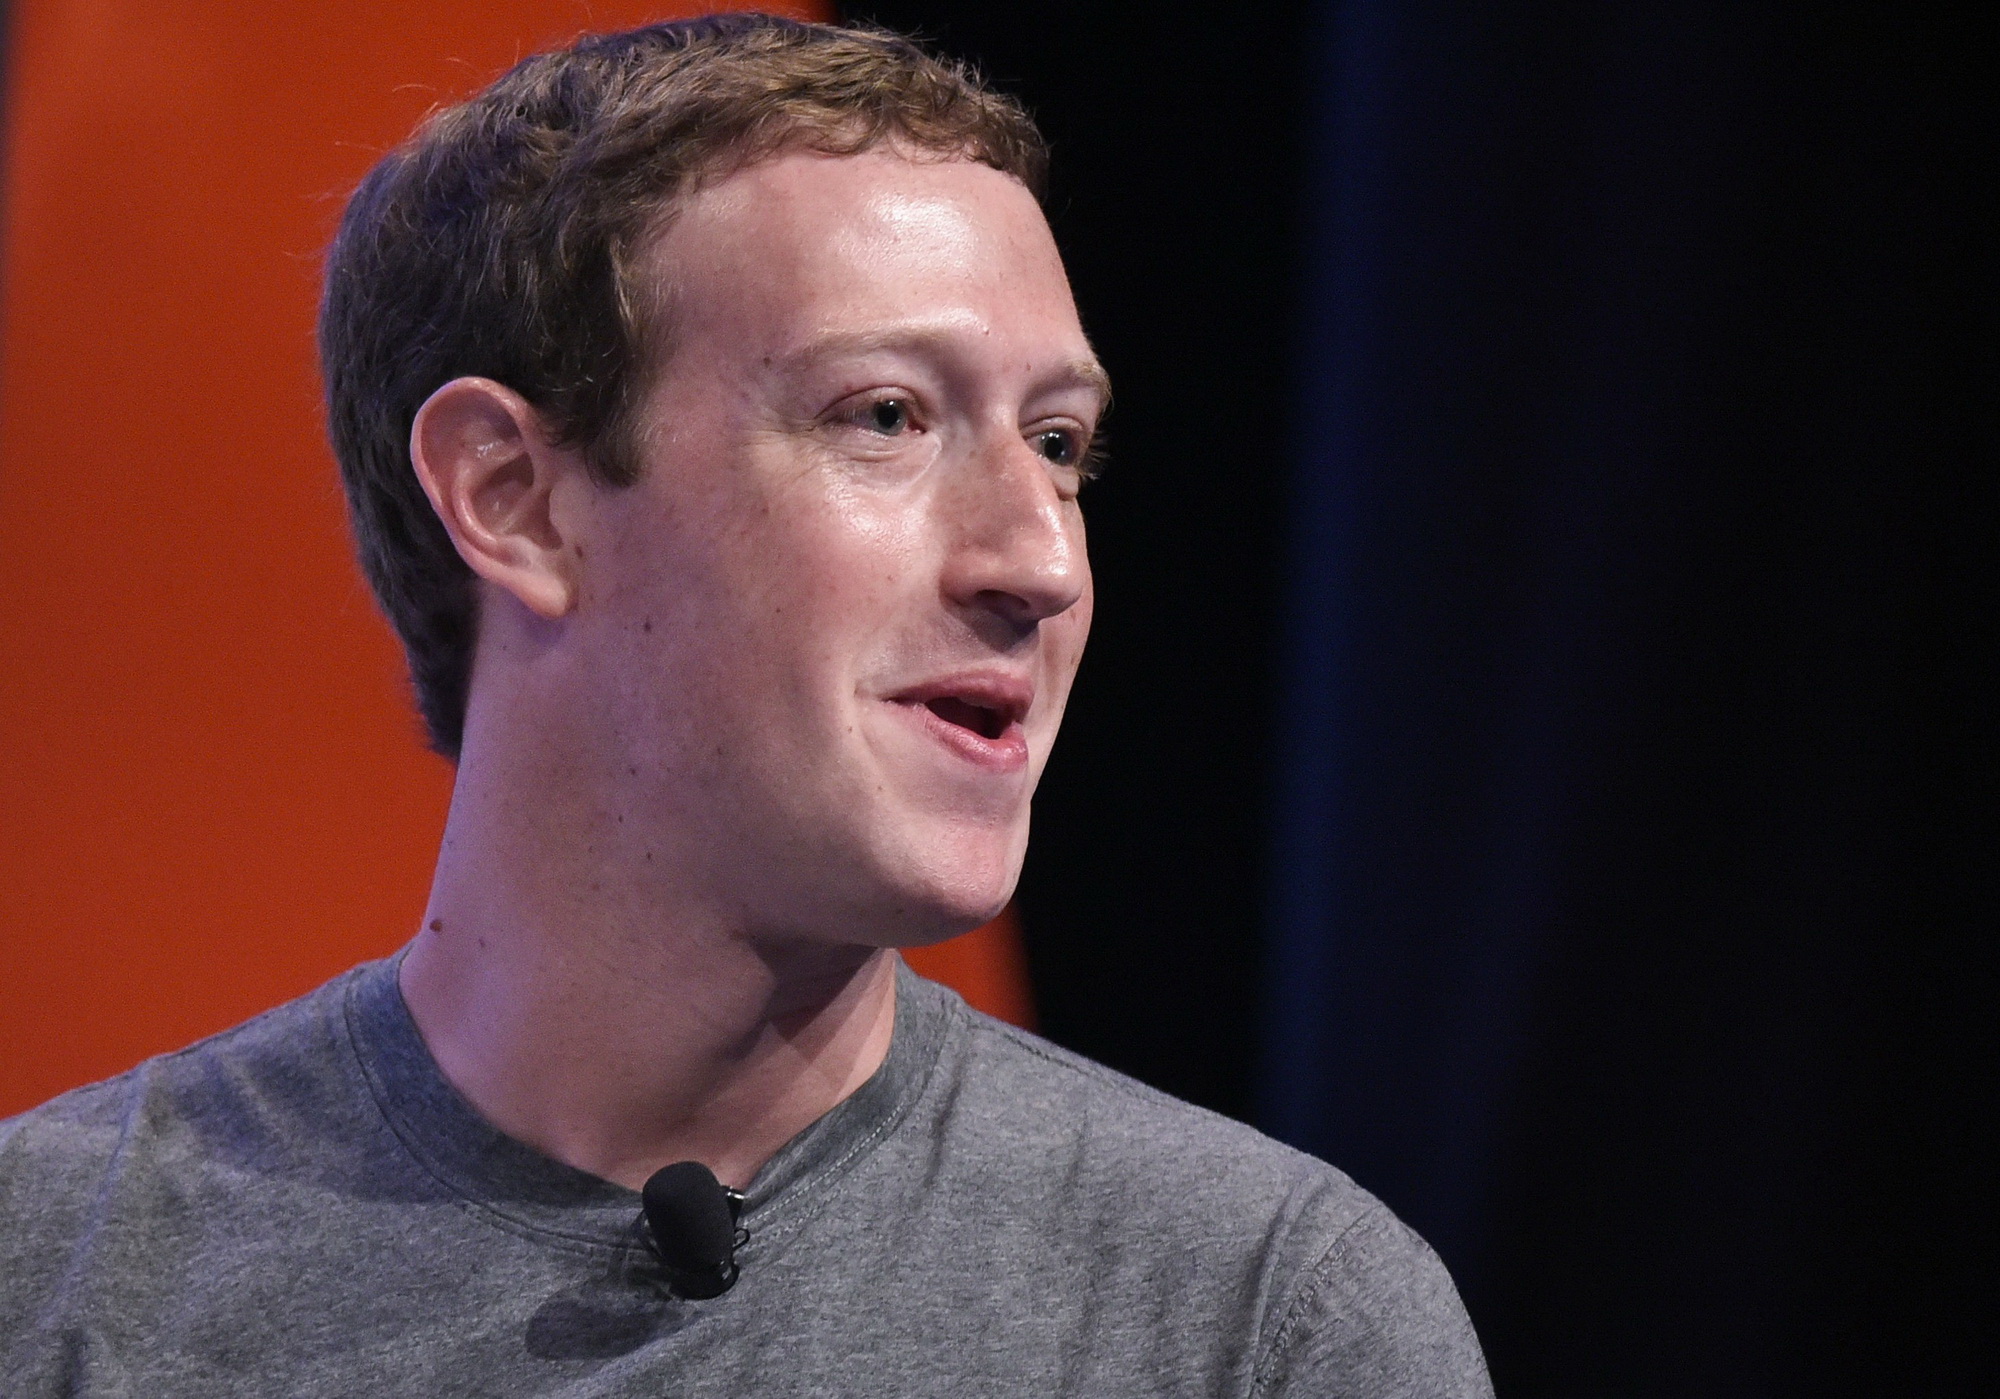 'Chúng tôi có trách nhiệm bảo vệ thông tin cá nhân của người dùng. Nếu chúng tôi không làm được điều đó, chúng tôi không xứng đáng,' Giám đốc điều hành Facebook Mark Zuckerberg đăng lời xin lỗi trên một tờ báo của Anh. (Nguồn: AFP/TTXVN)